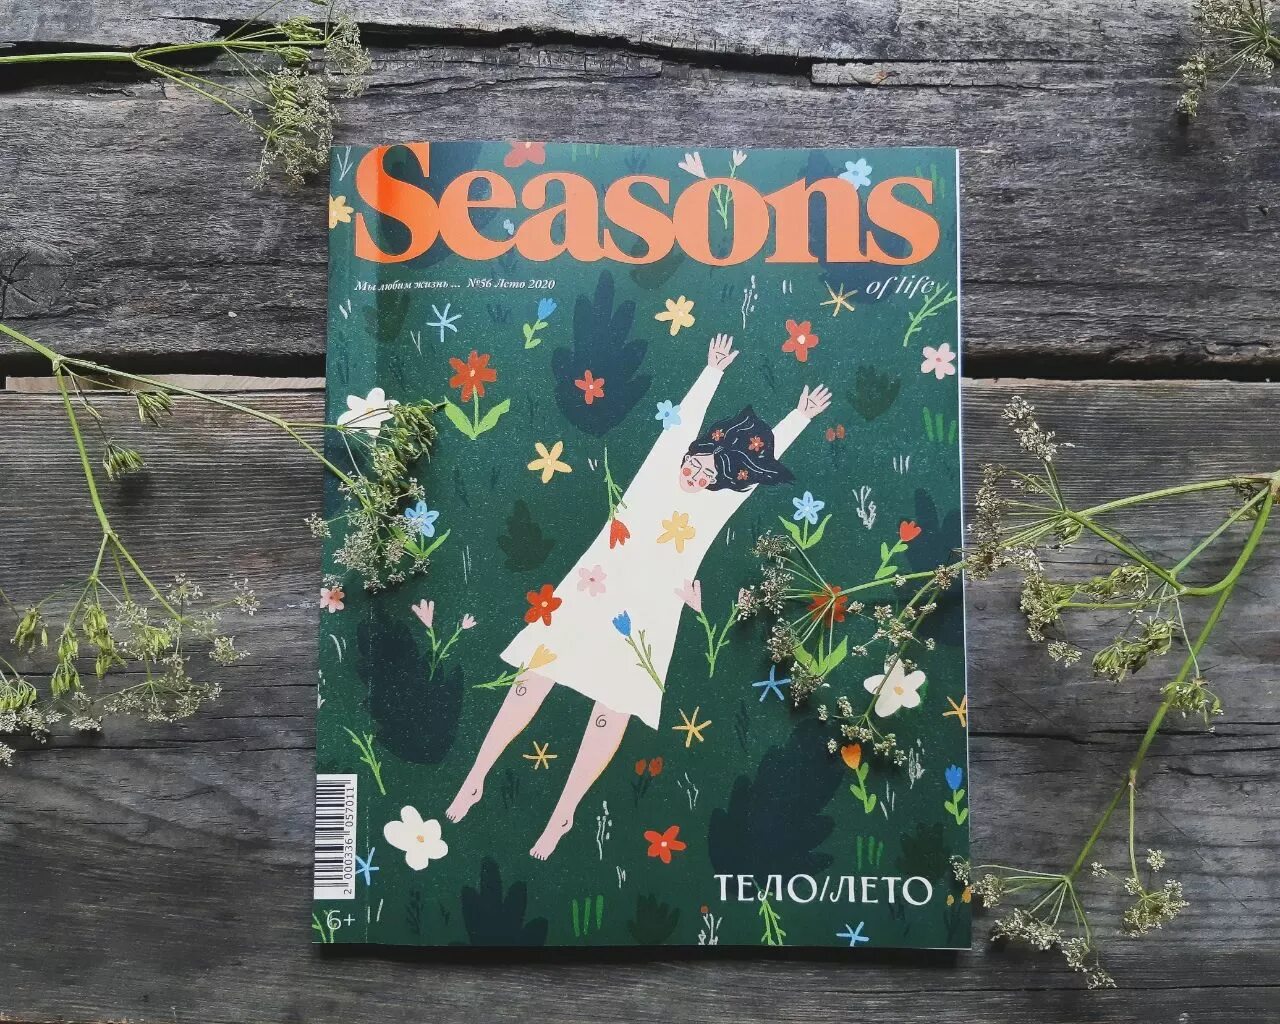 Сизонс журнал. Seasons of Life журнал. Журнал Сизонс обложки. Seasons шурнала. Обложка журнала лето.